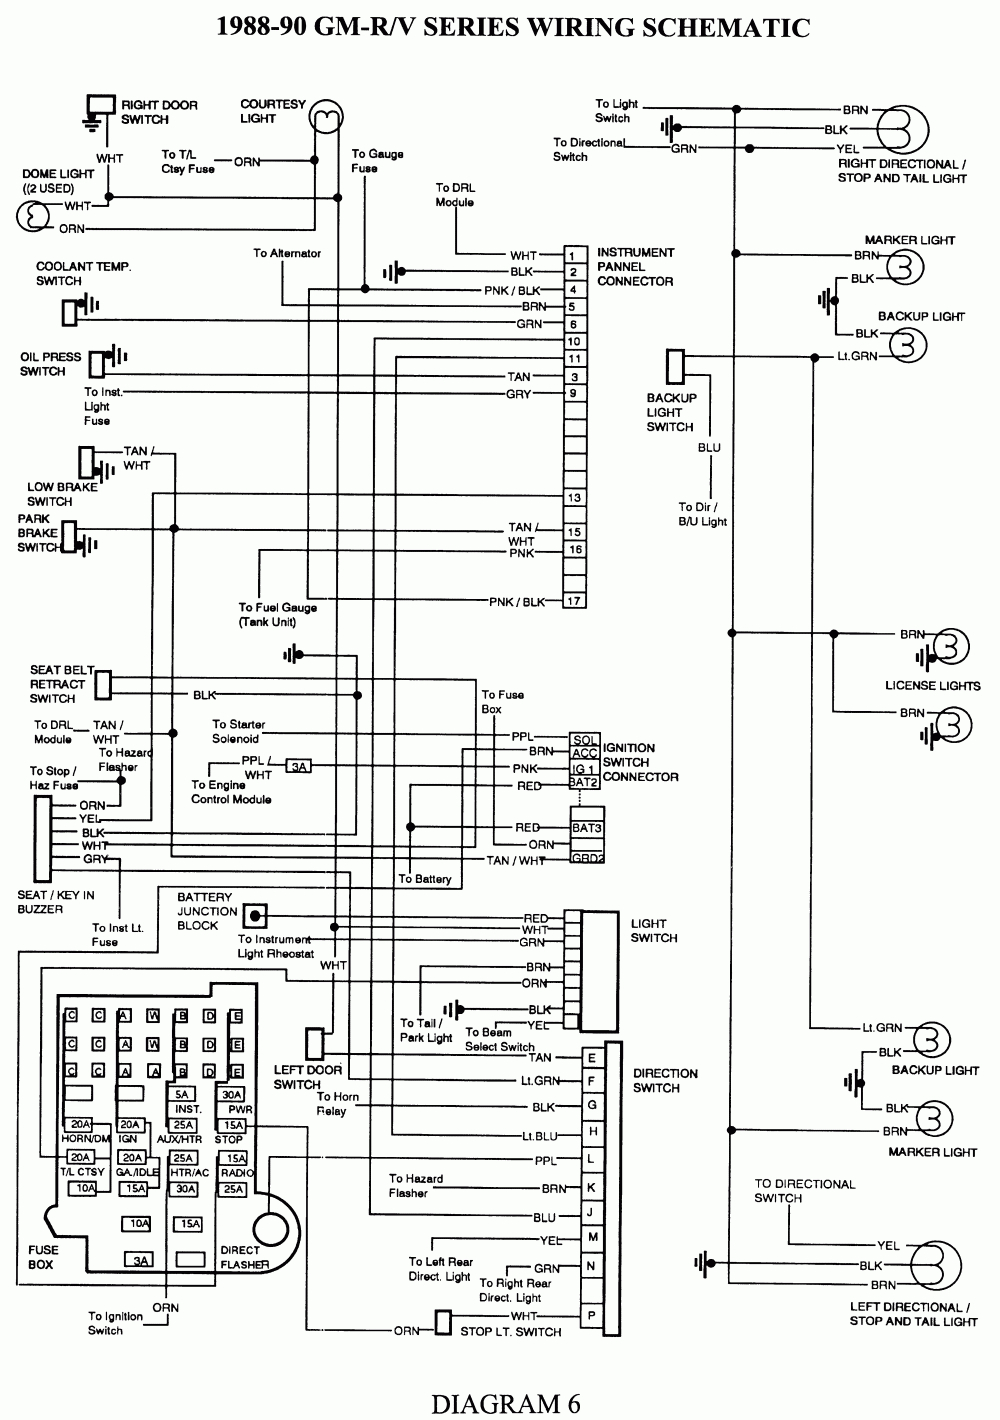 2003 Chevy Silverado Wiring Diagram - Cadician's Blog